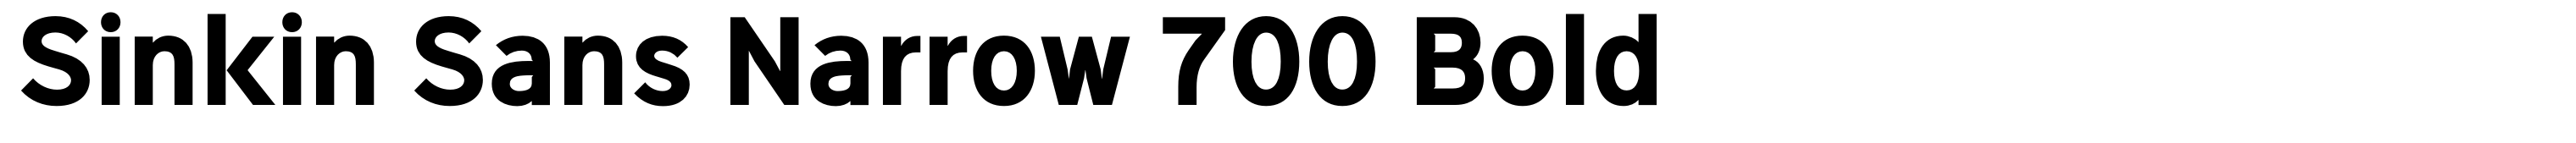 Sinkin Sans Narrow 700 Bold